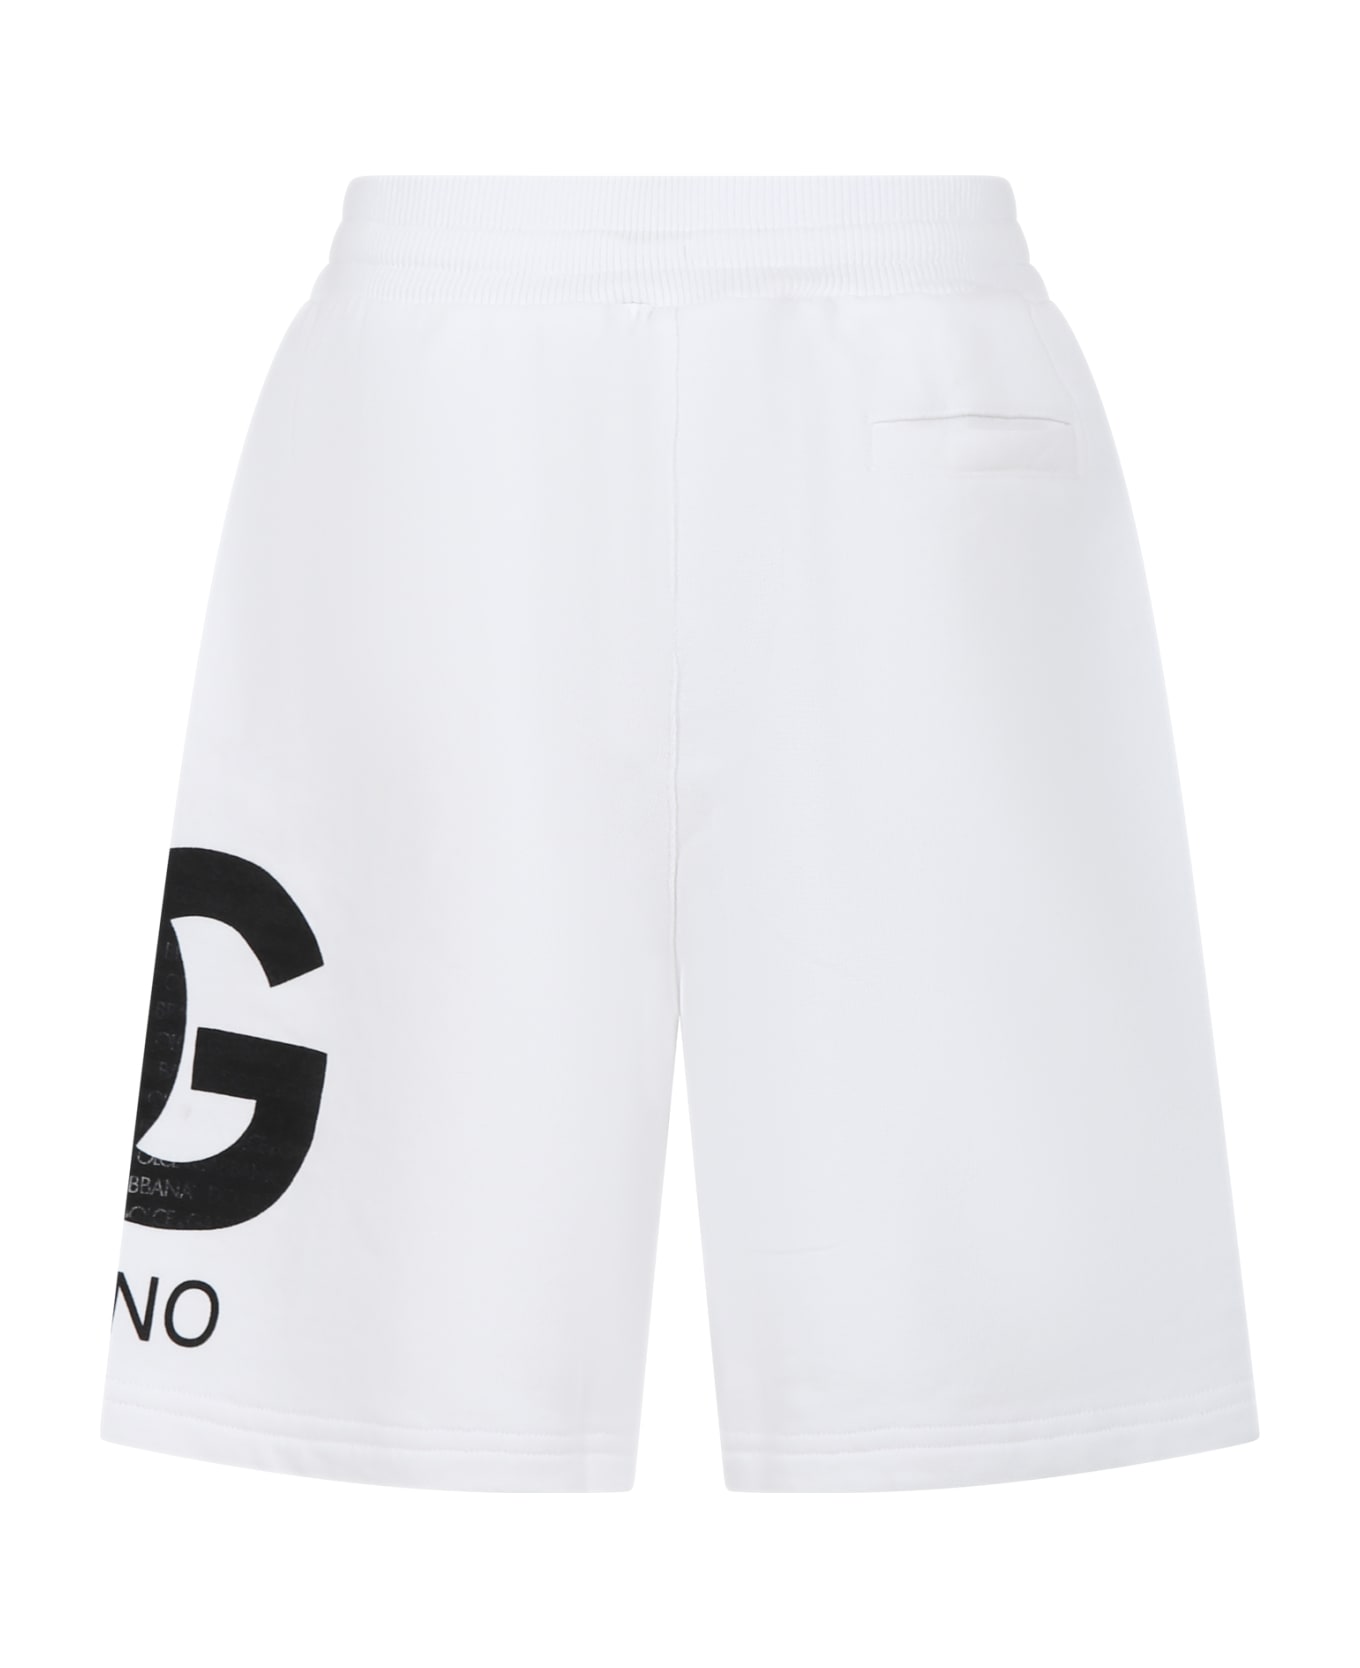 Dolce & Gabbana White Shorts For Boy With Iconic Monogram - Bianco Ottico ボトムス